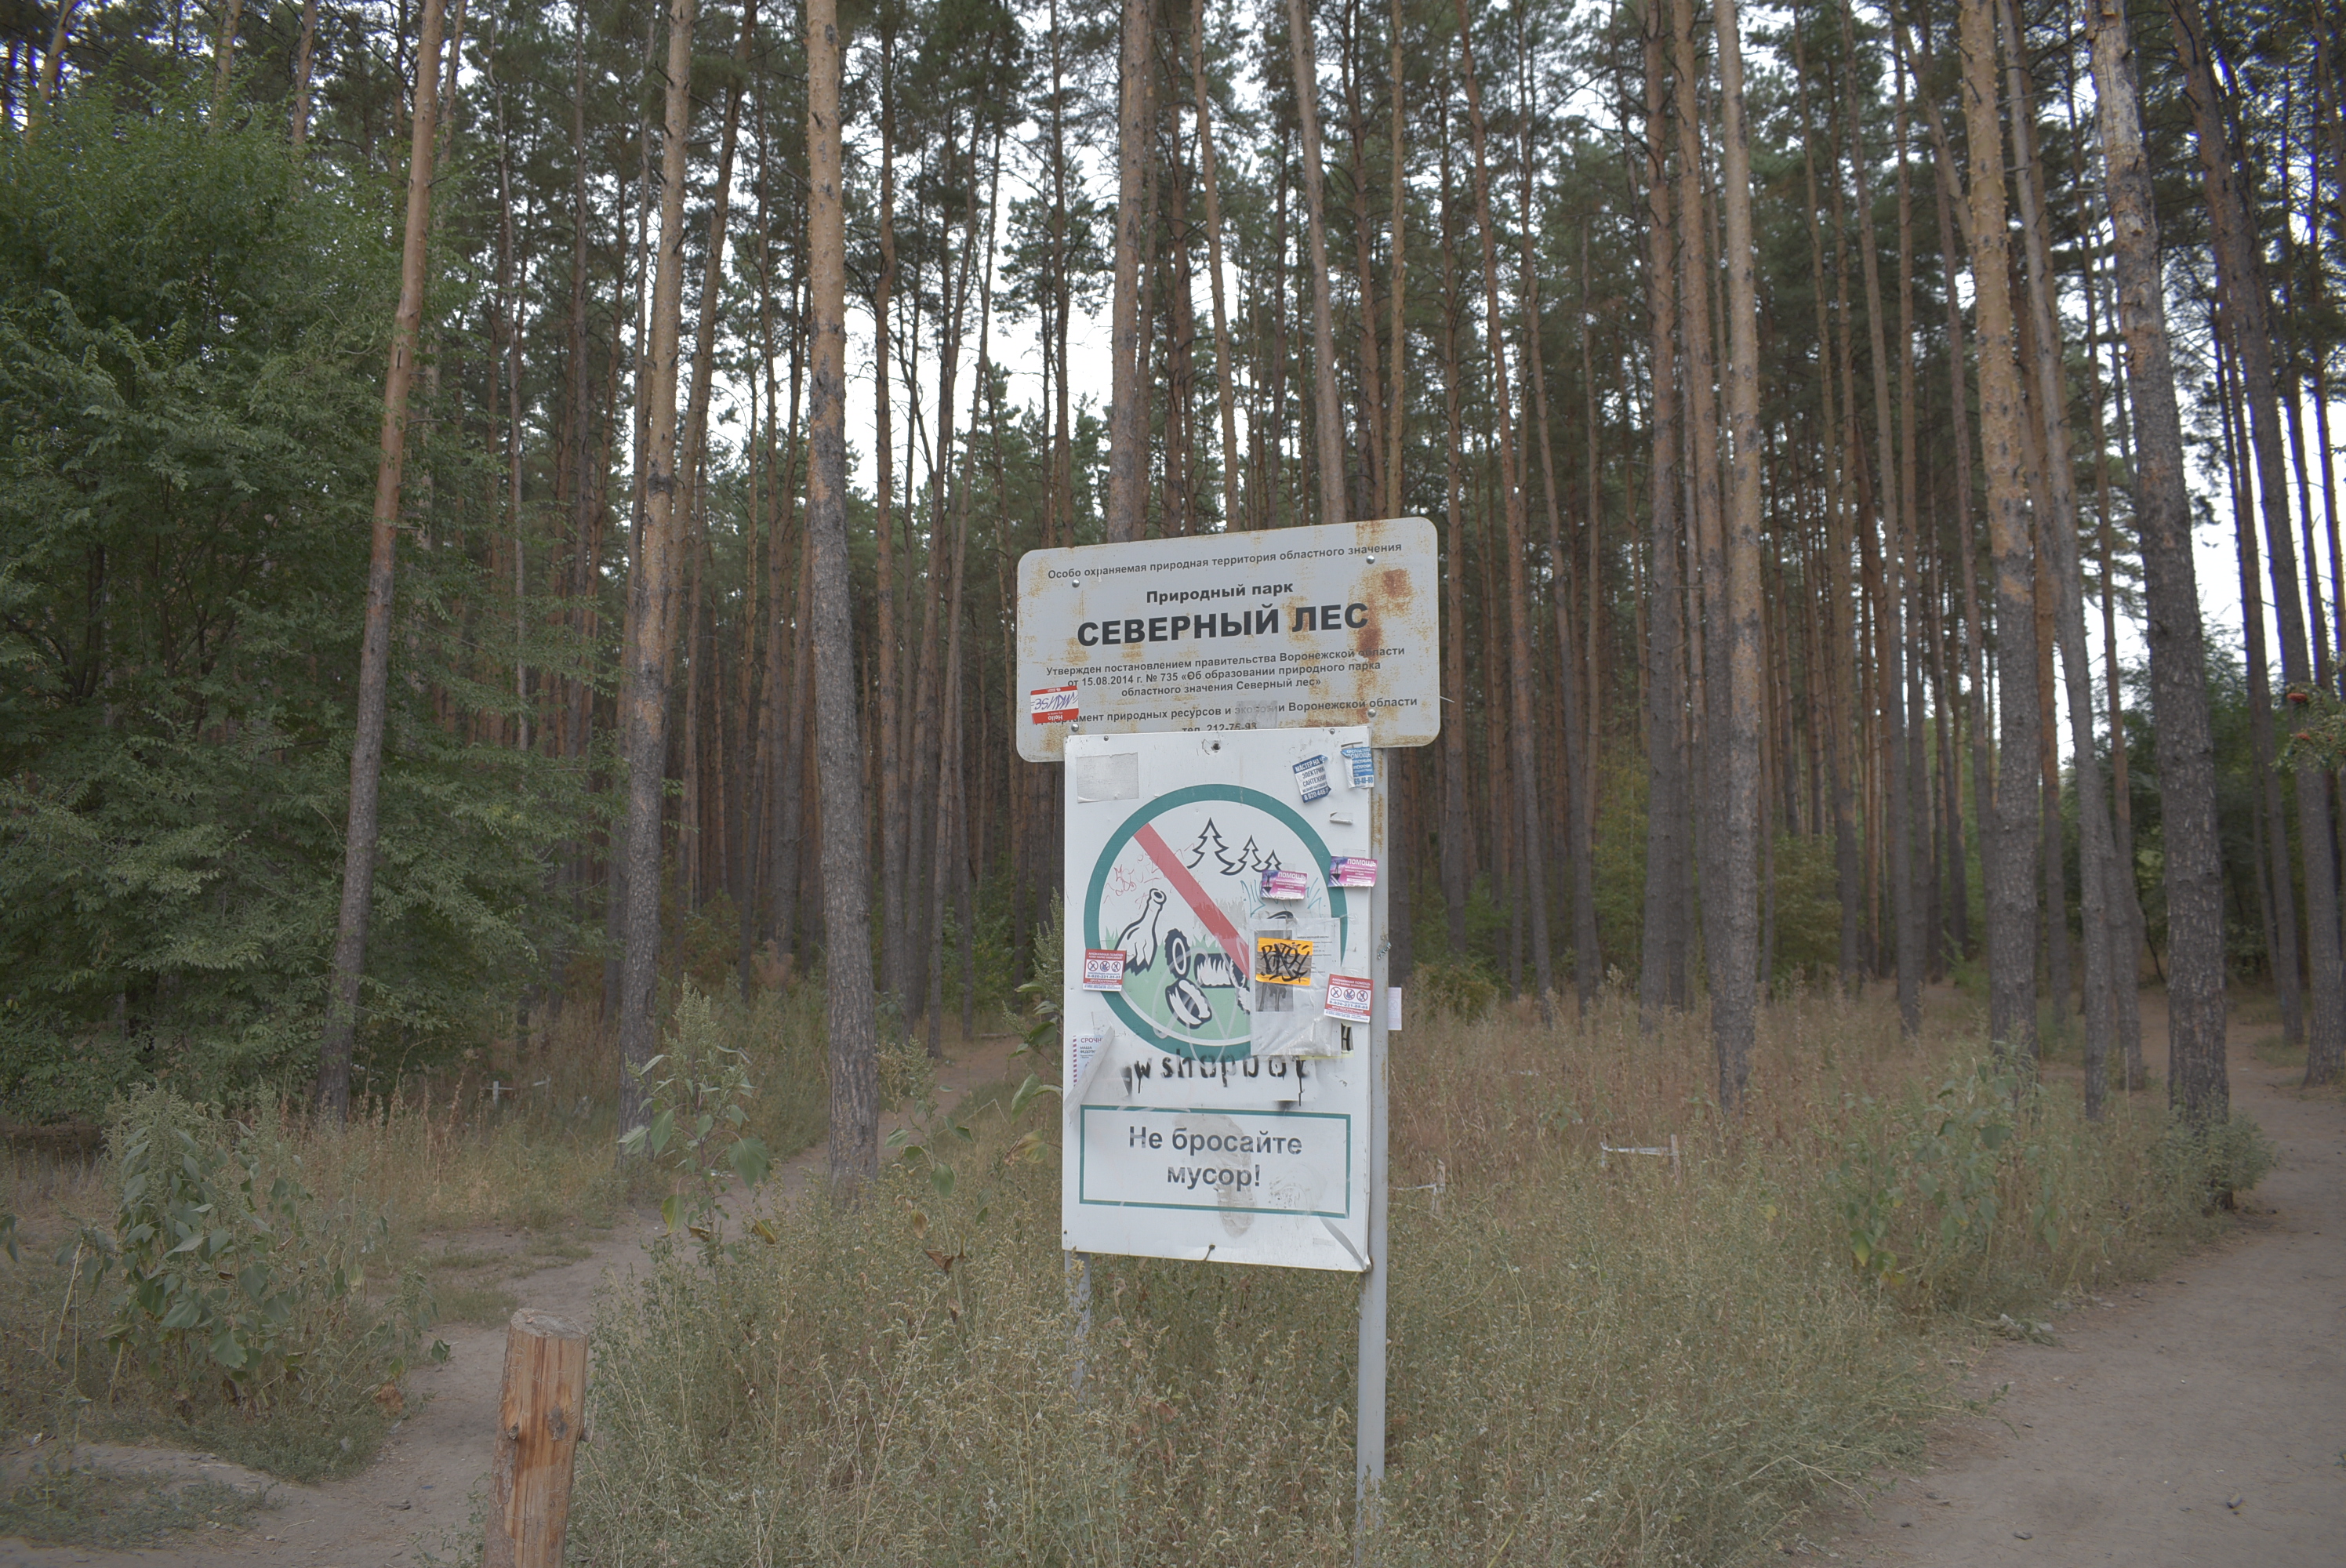 42 сотки земли у Северного леса хотят продать за 12 млн рублей - фото 1